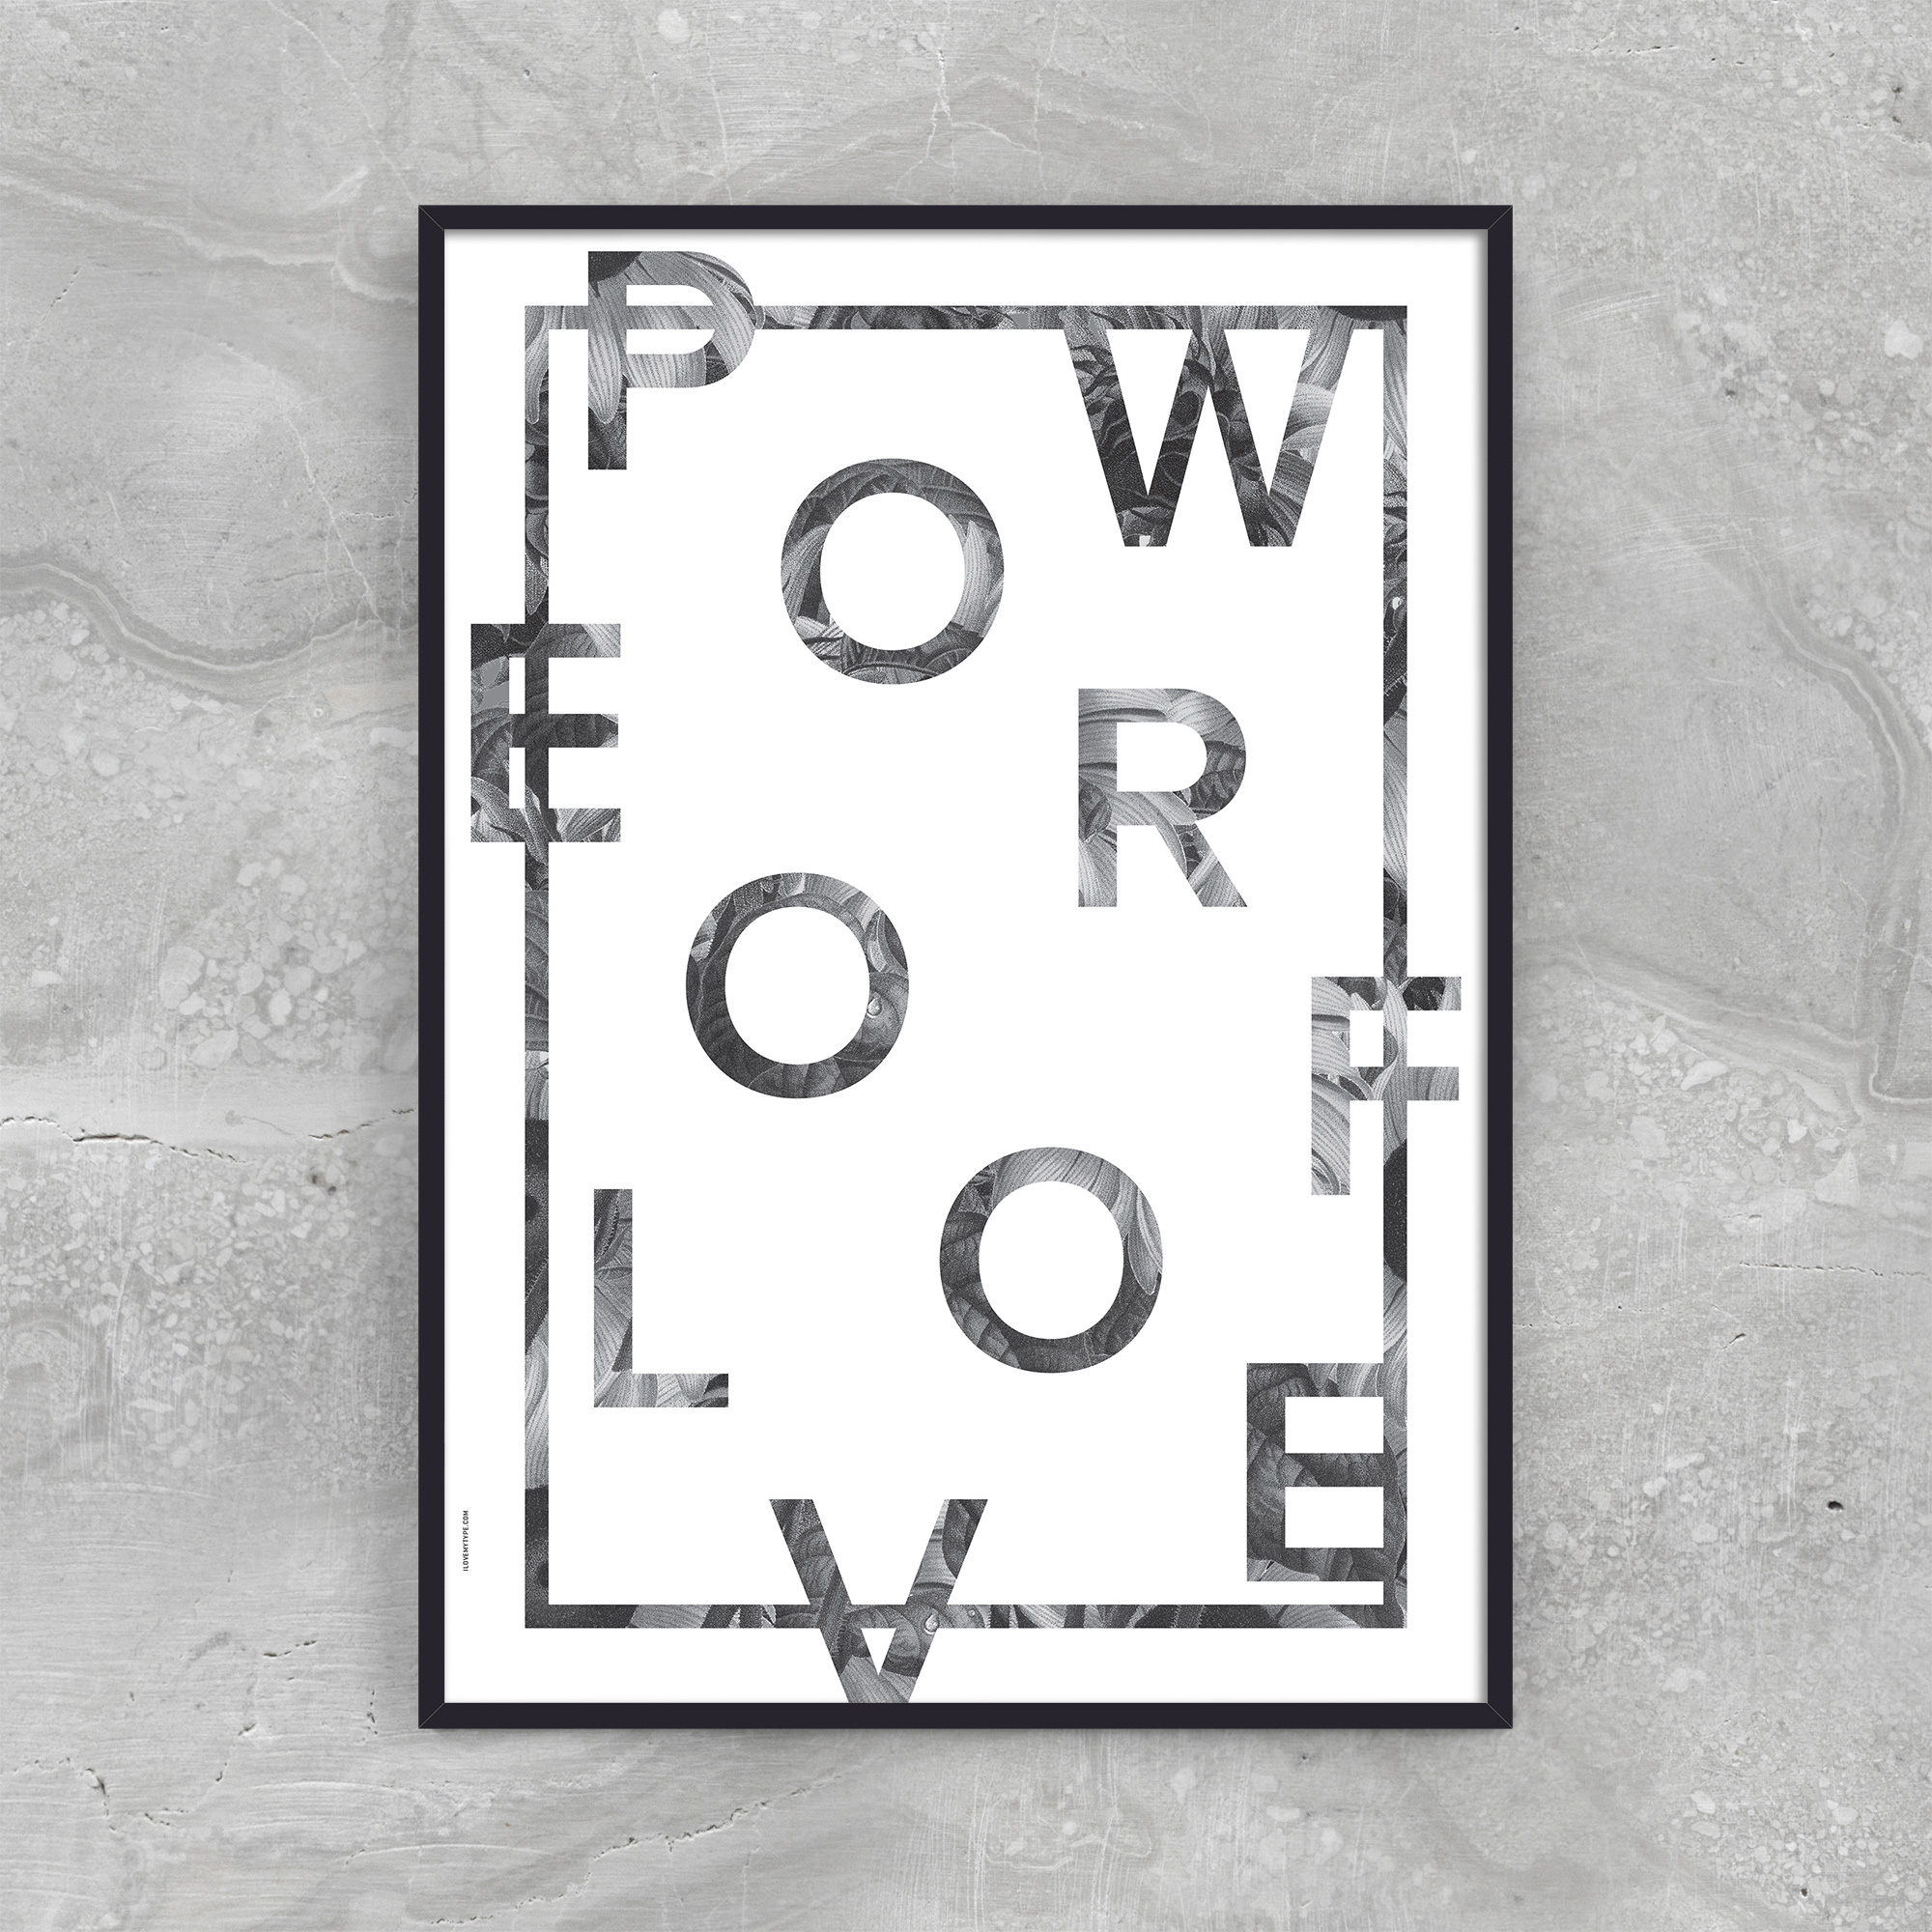 Billede af POWER OF LOVE - WHITE